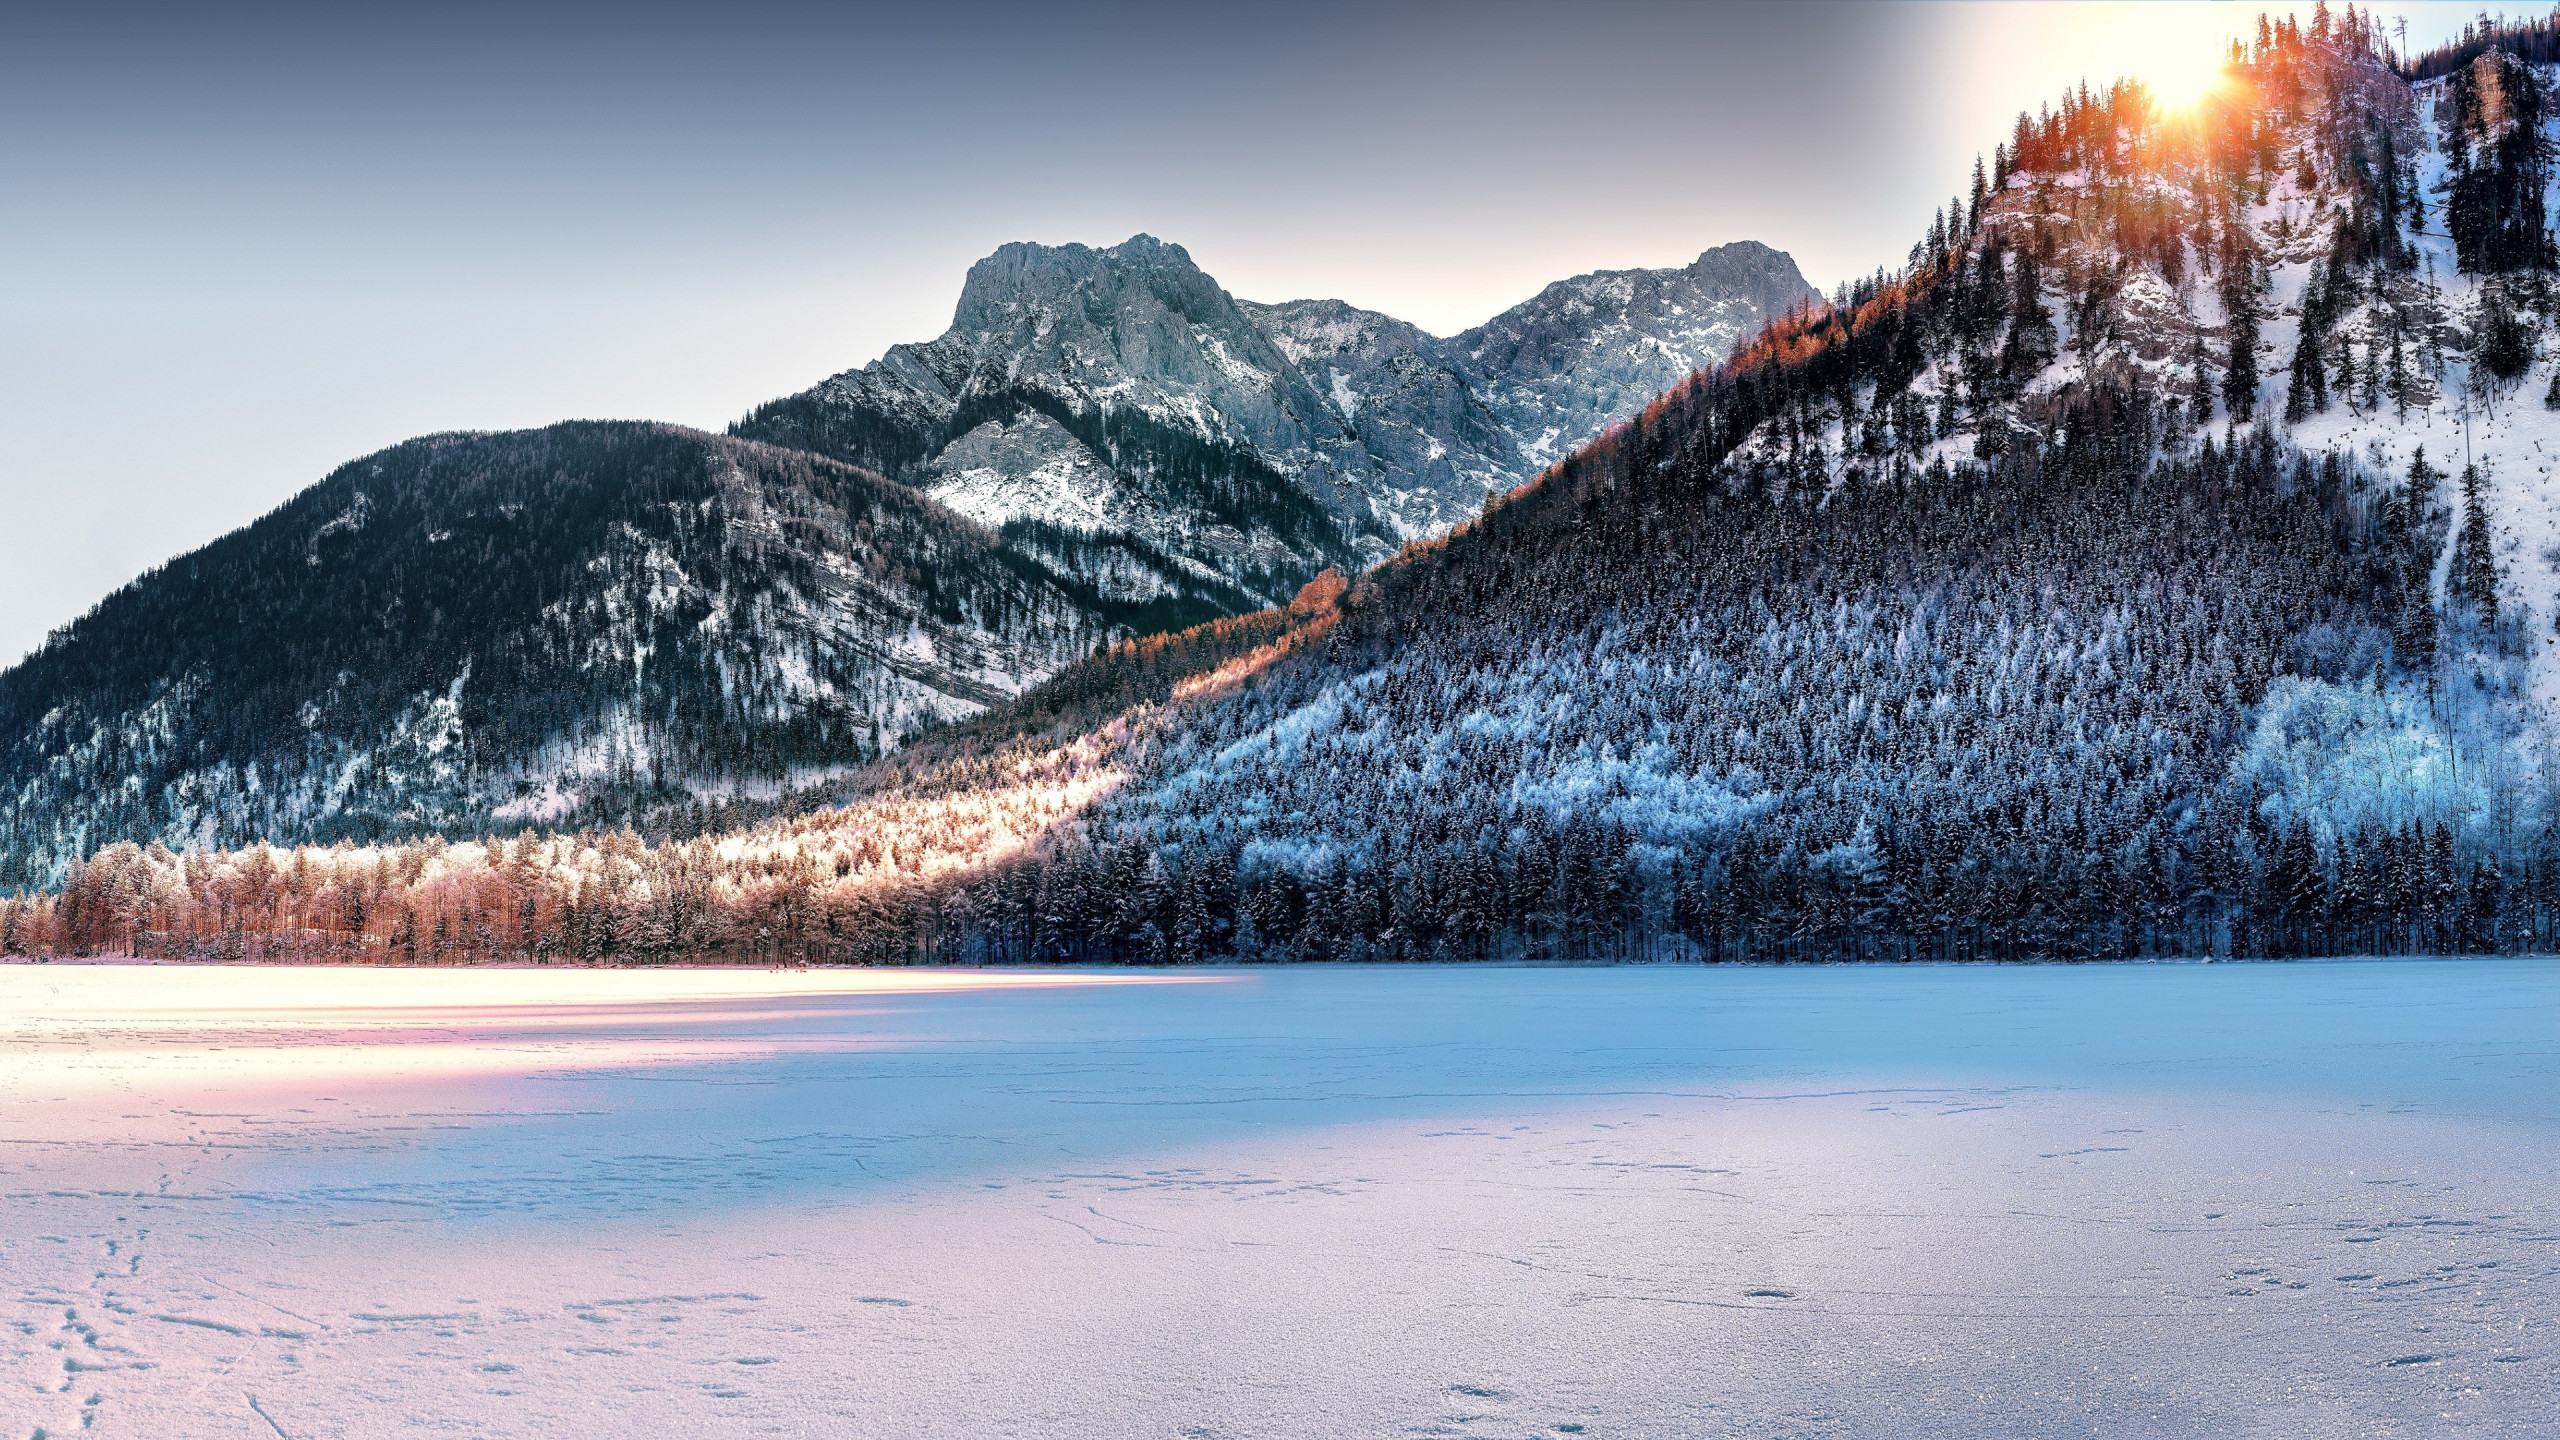 Dreamy Winter landscape wallpaper 2560x1440